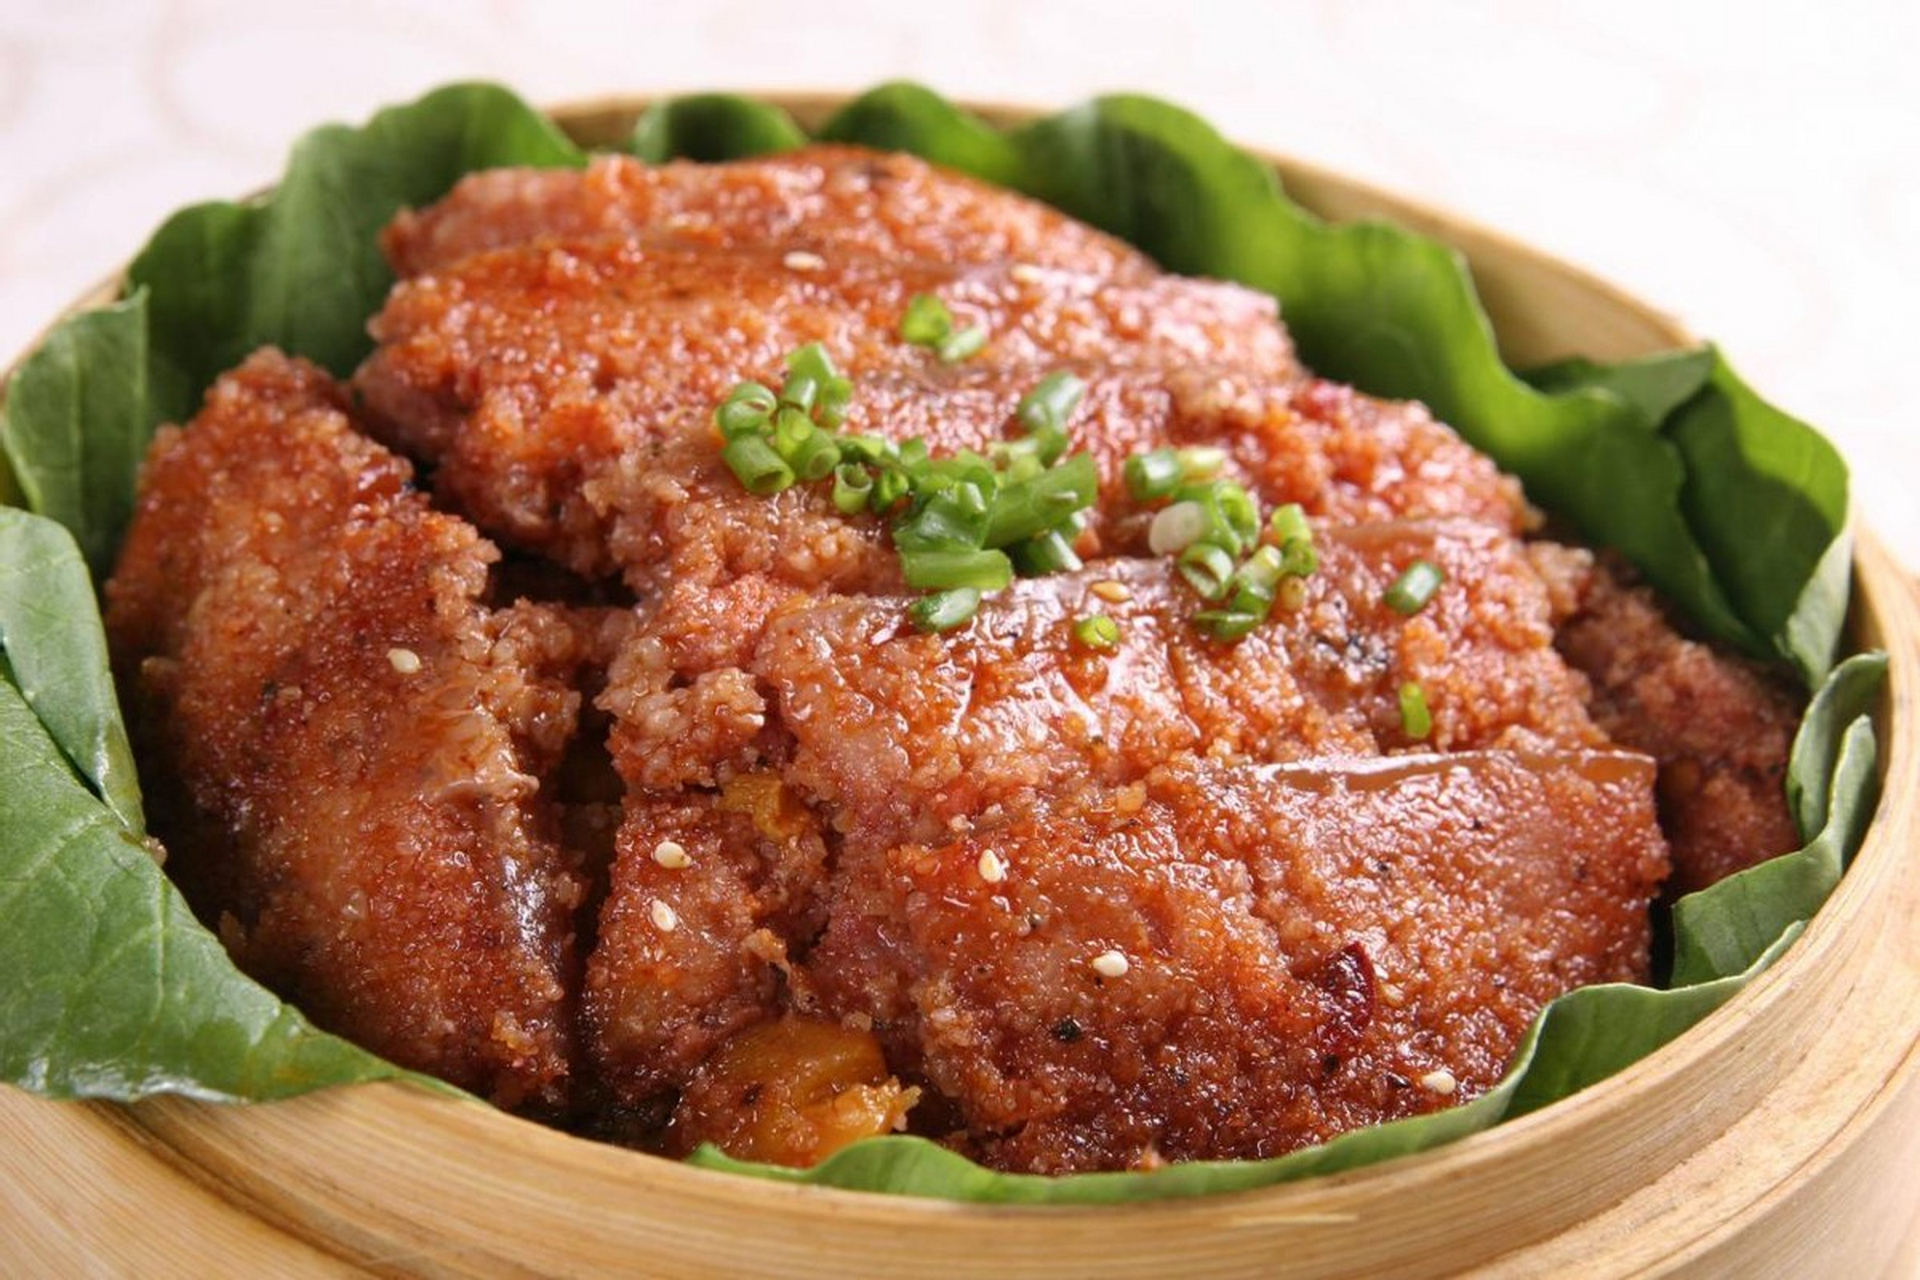 宁波十大名菜之一,荷叶粉蒸肉的制作过程虽然看起来简单,只有腌制,粉